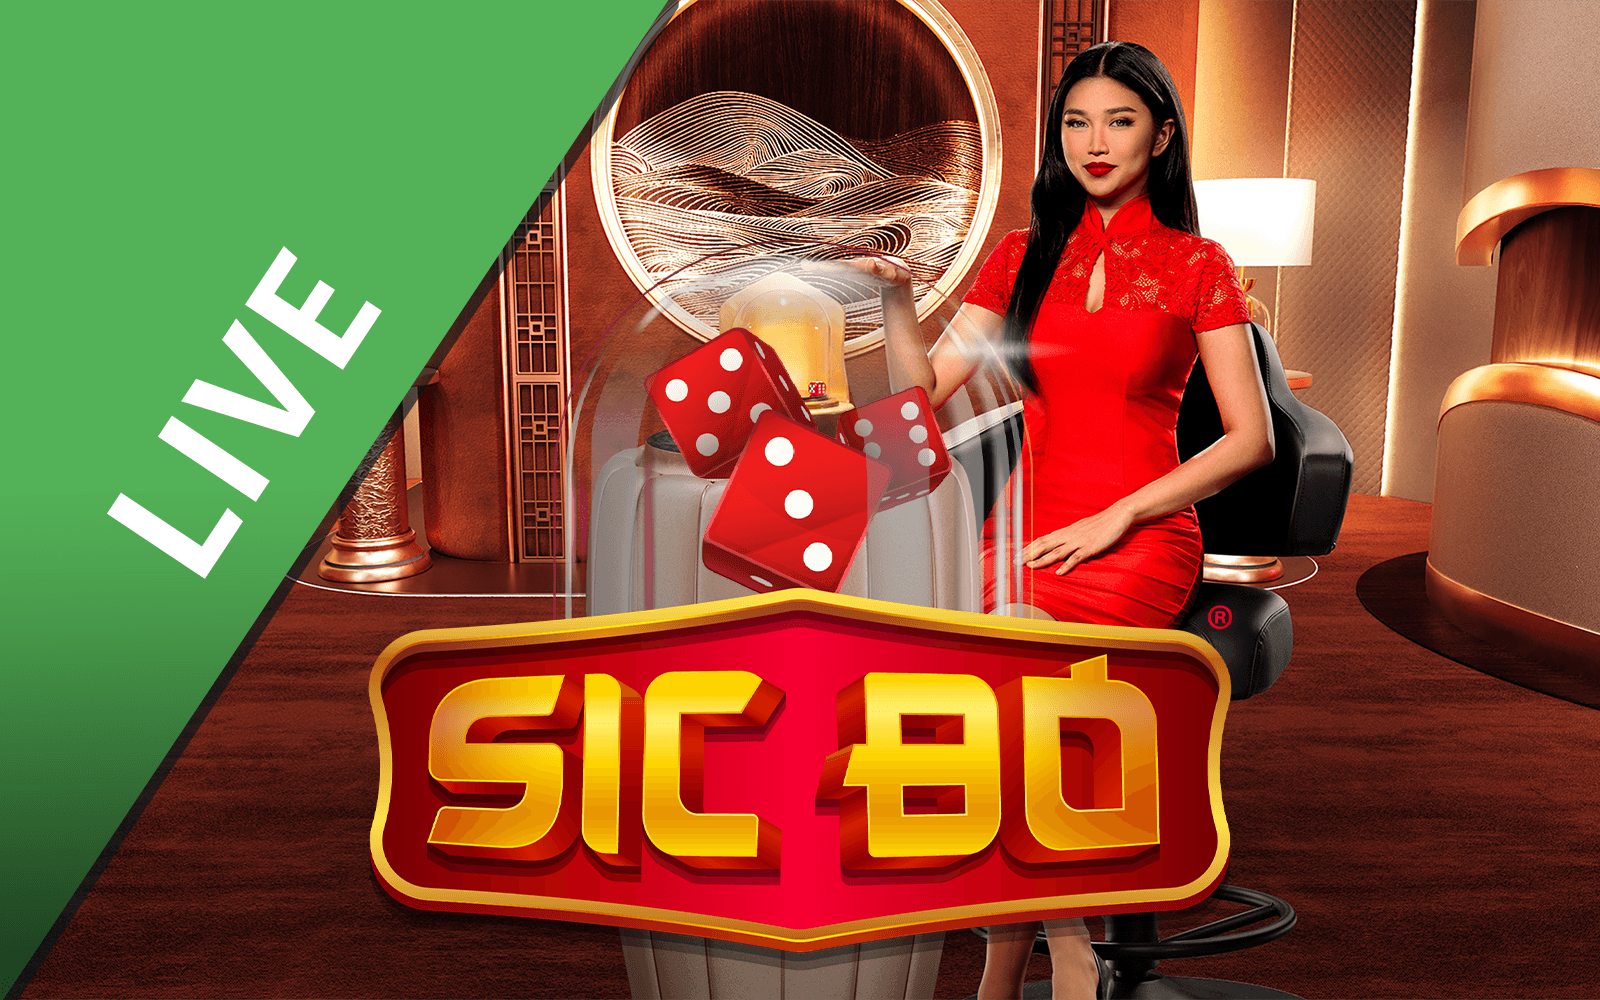 Starcasino.be online casino üzerinden Sic Bo™ oynayın